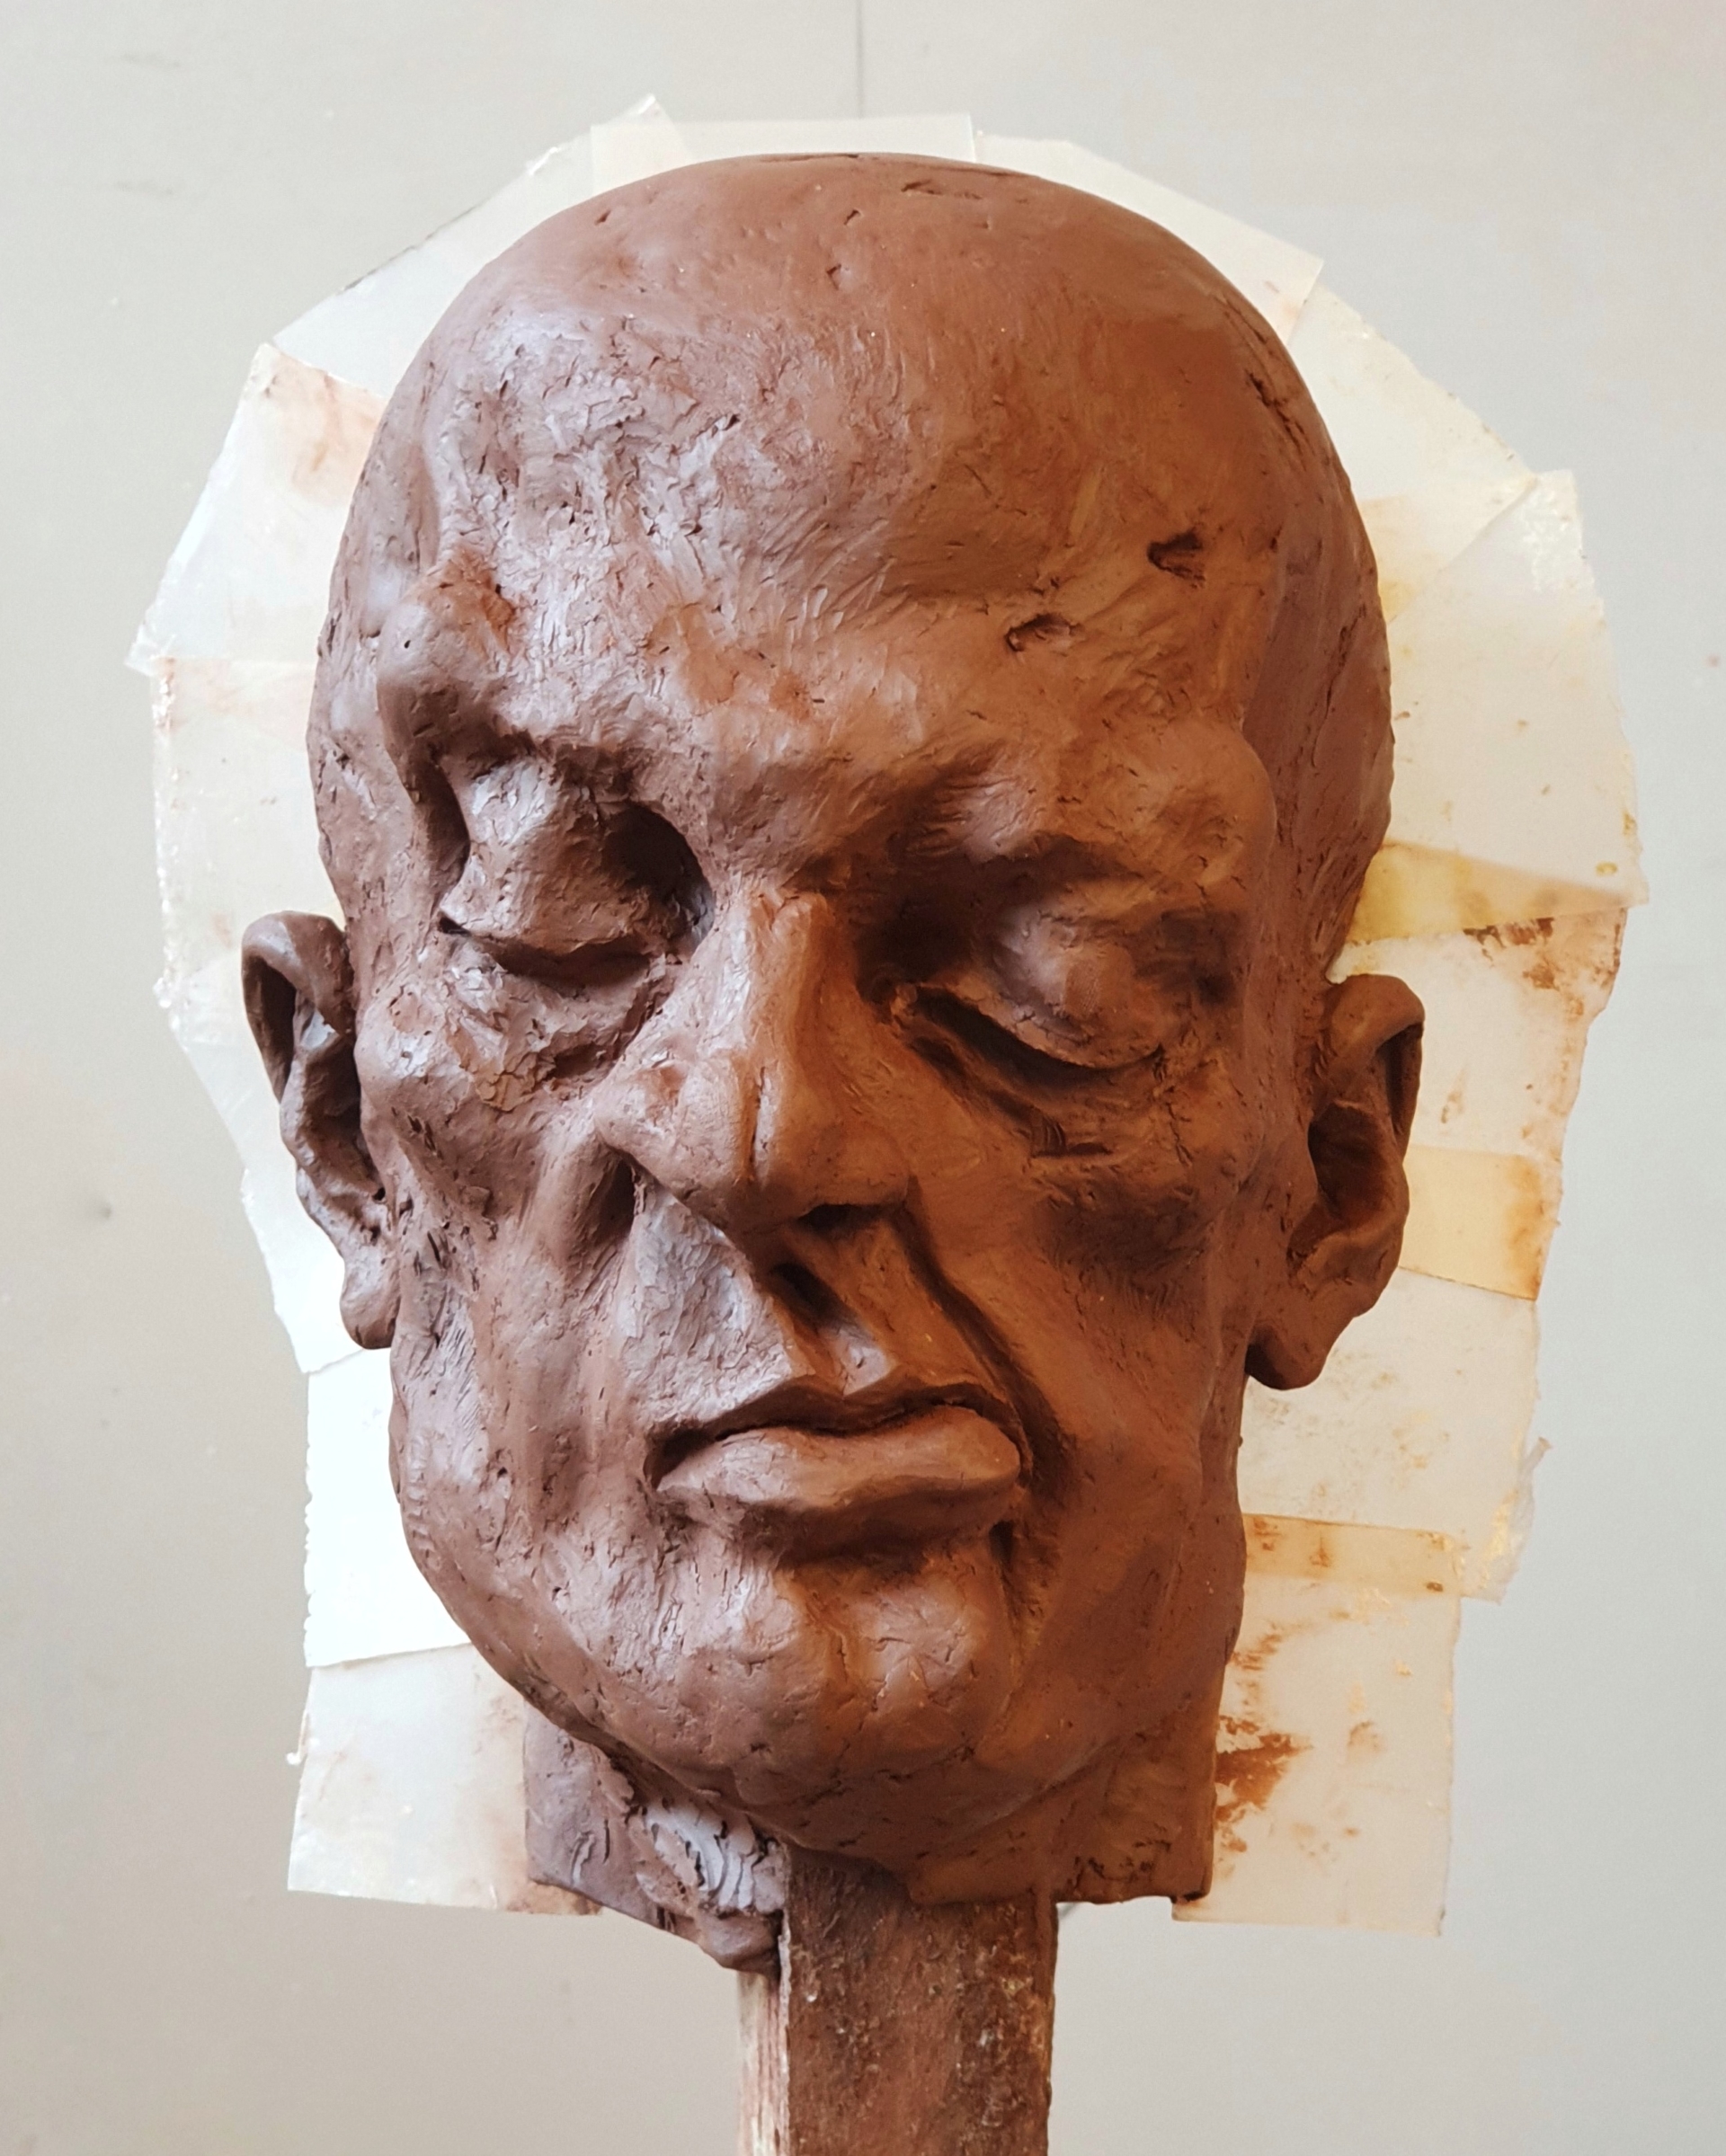 Portret gliniany przedstawiający łysą, groteskową postać o skrzywionej wgrymasie twarzy i zmrużonych oczach.